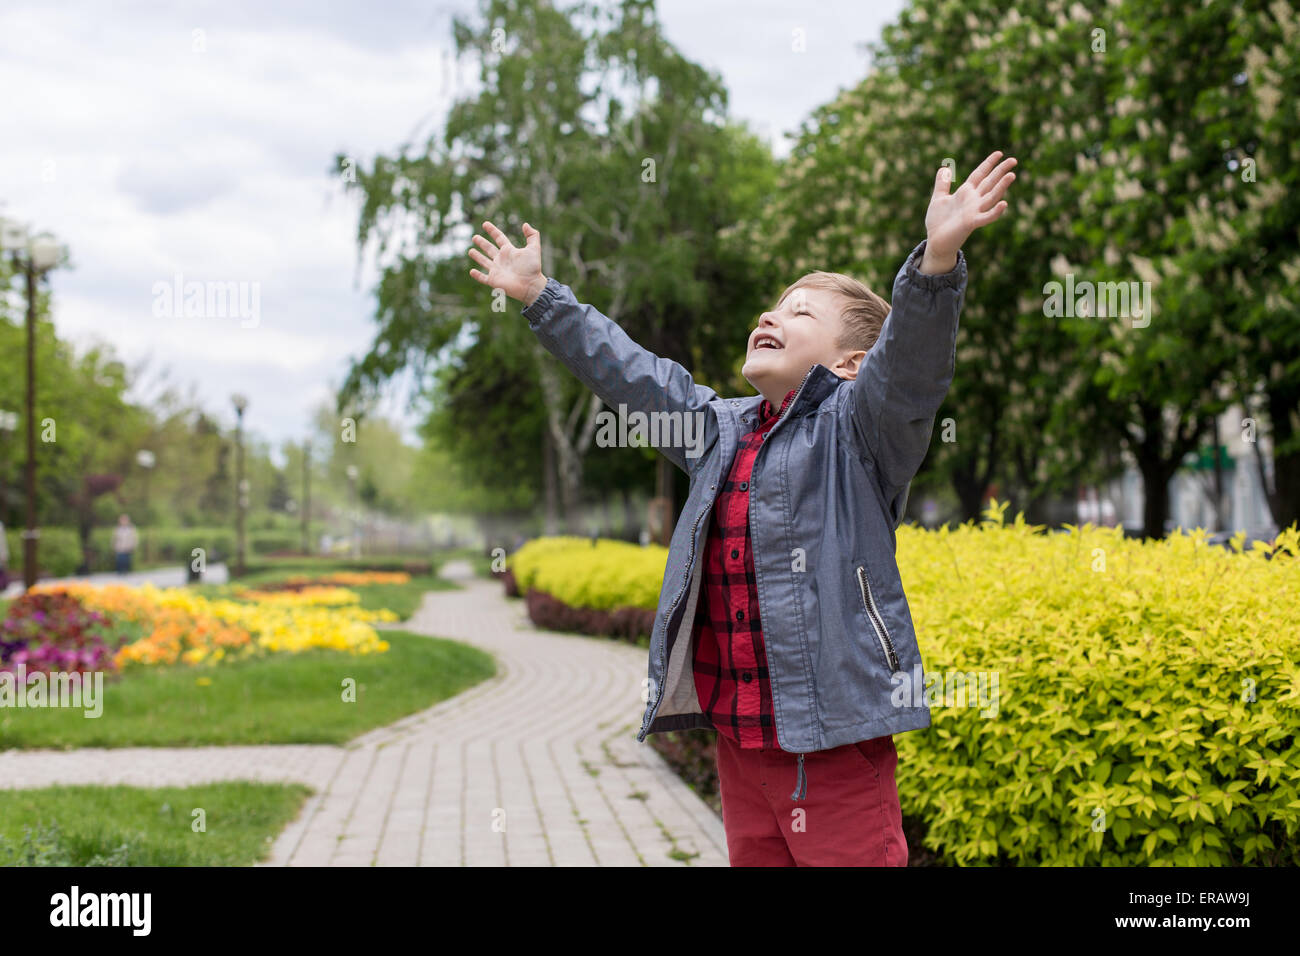 Niño feliz con camiseta roja en el jardín